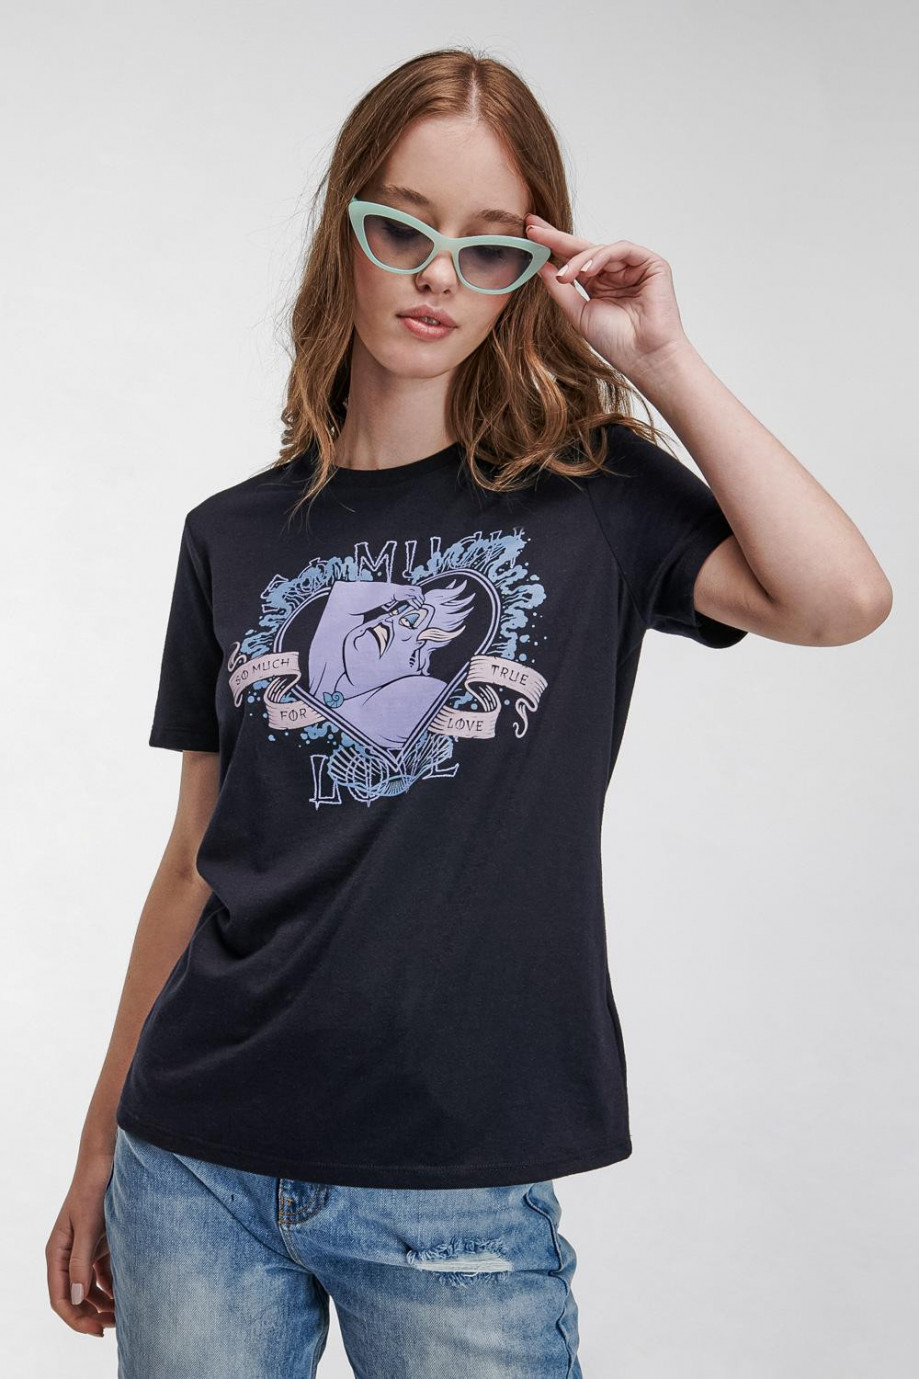 Camiseta, estampado de Ursula.